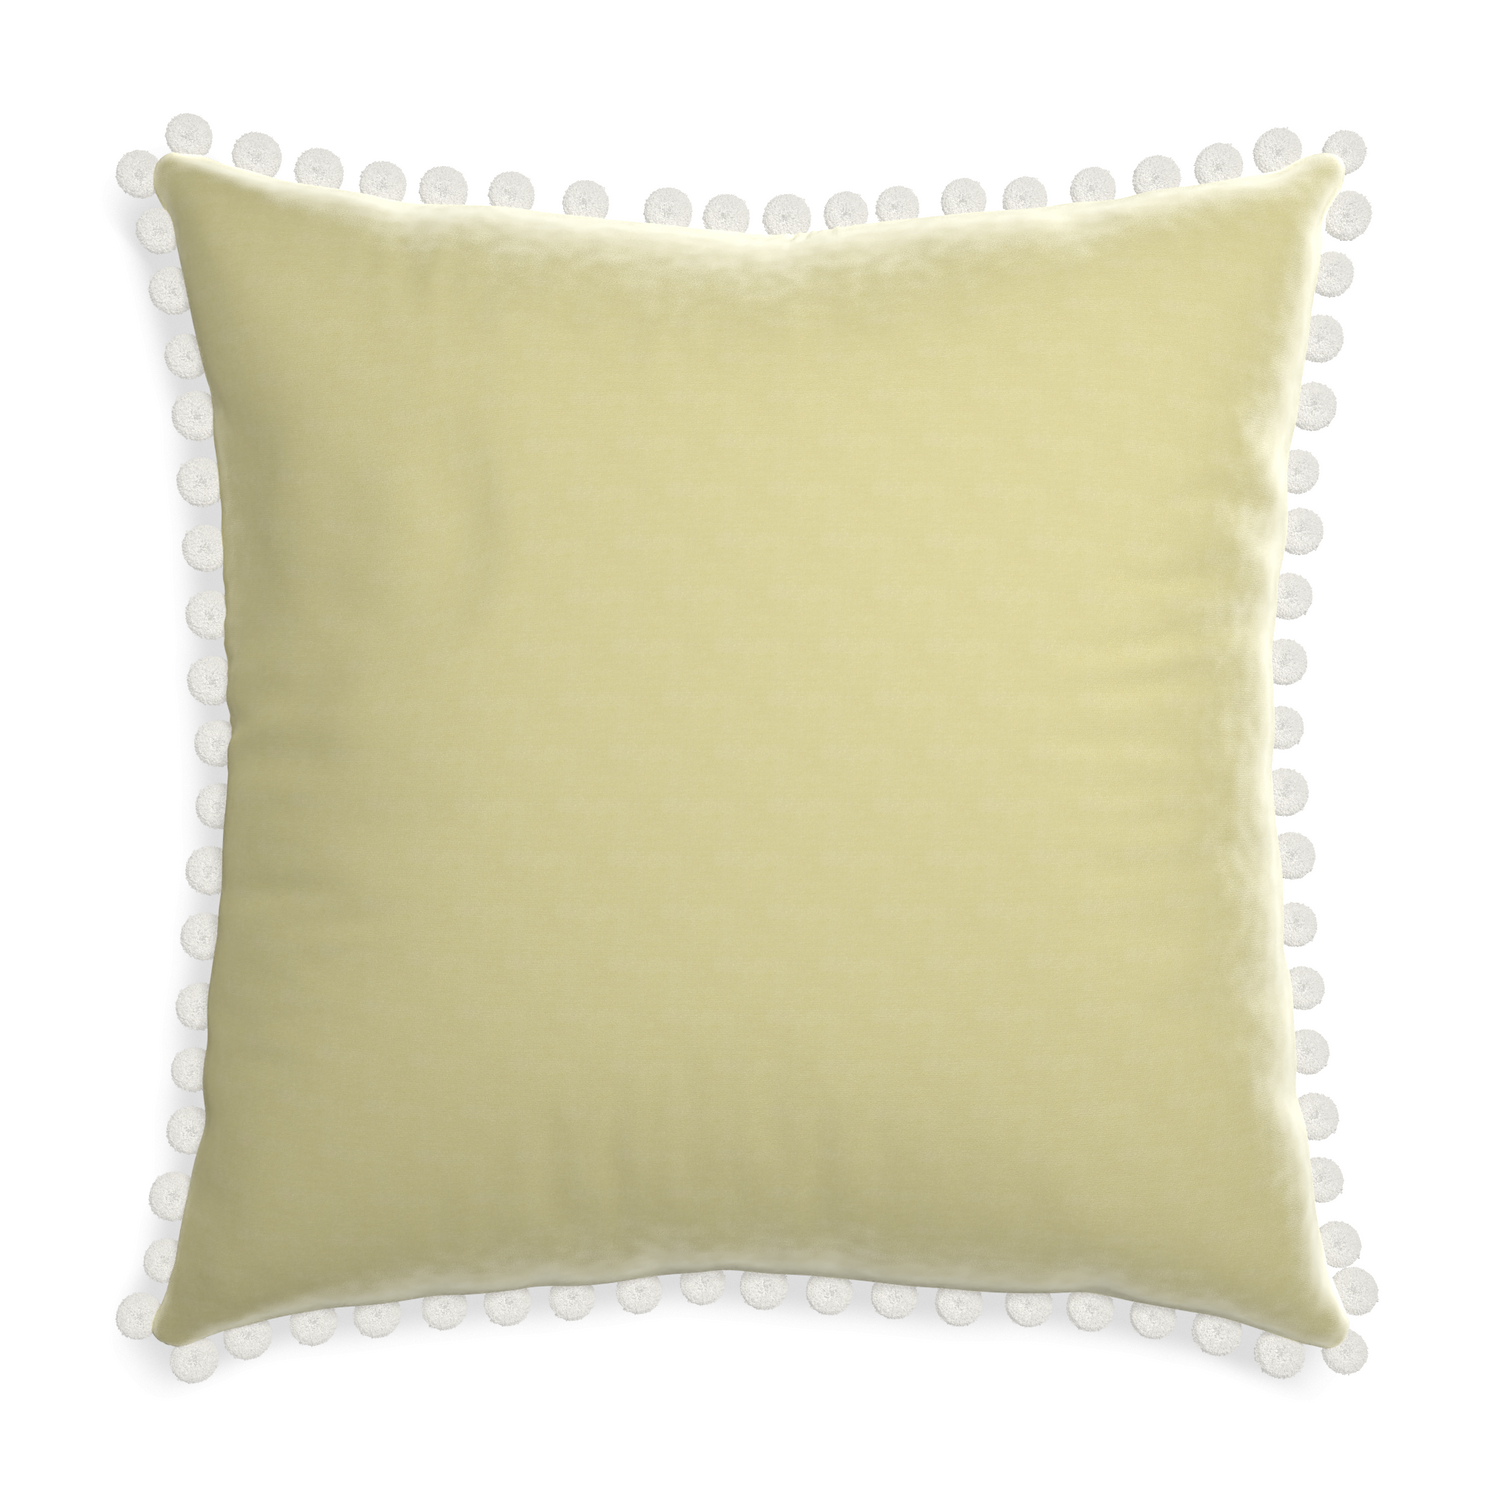 Euro-sham pear velvet custom pillow with snow pom pom on white background